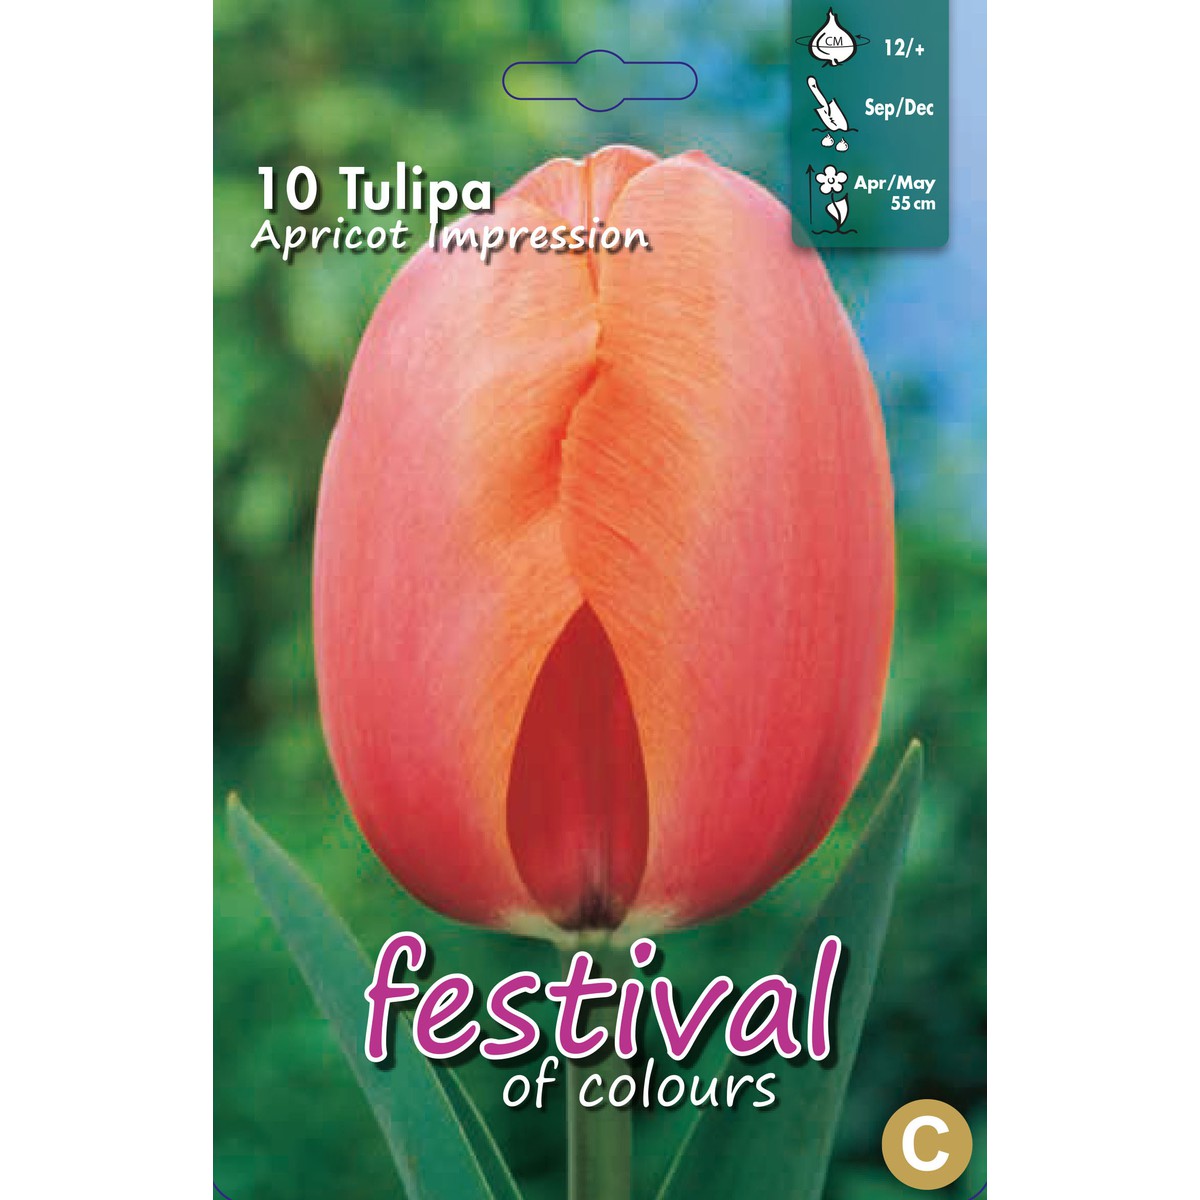   Tulipes 'Apricot Impression'  10 pcs 12/